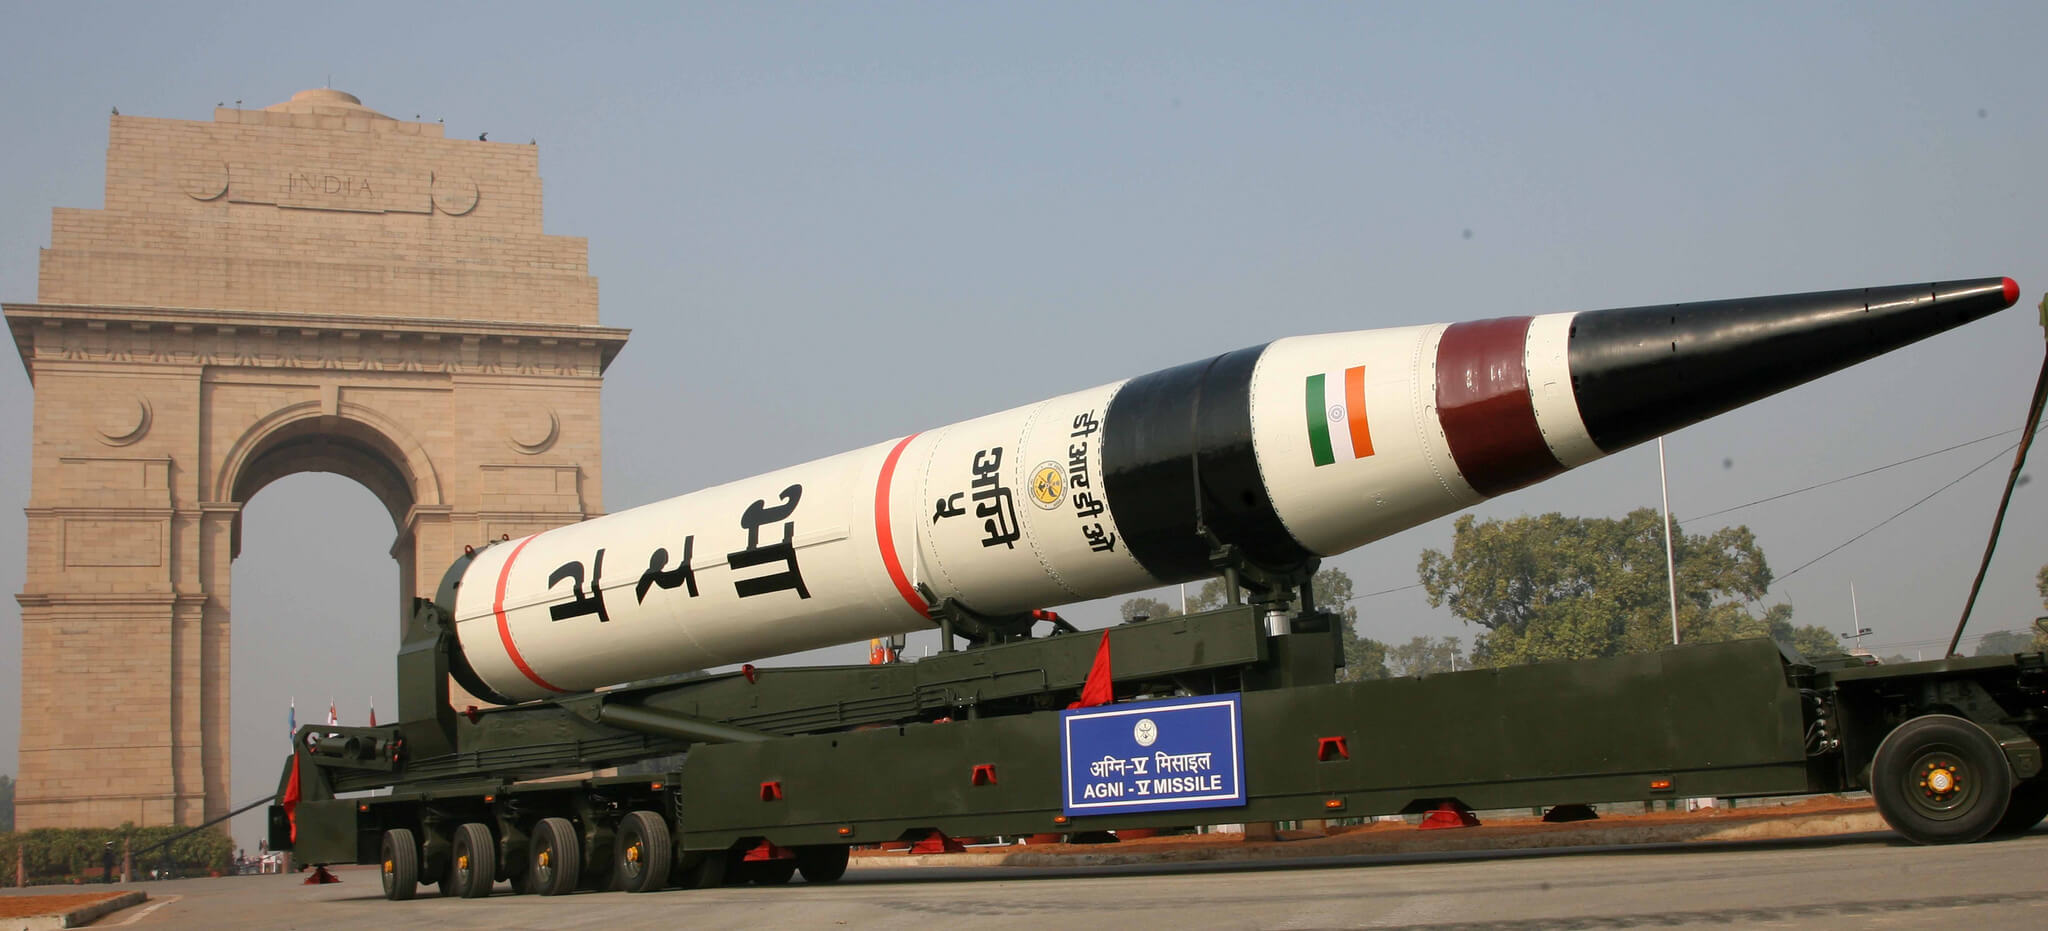 agni-5 Missile